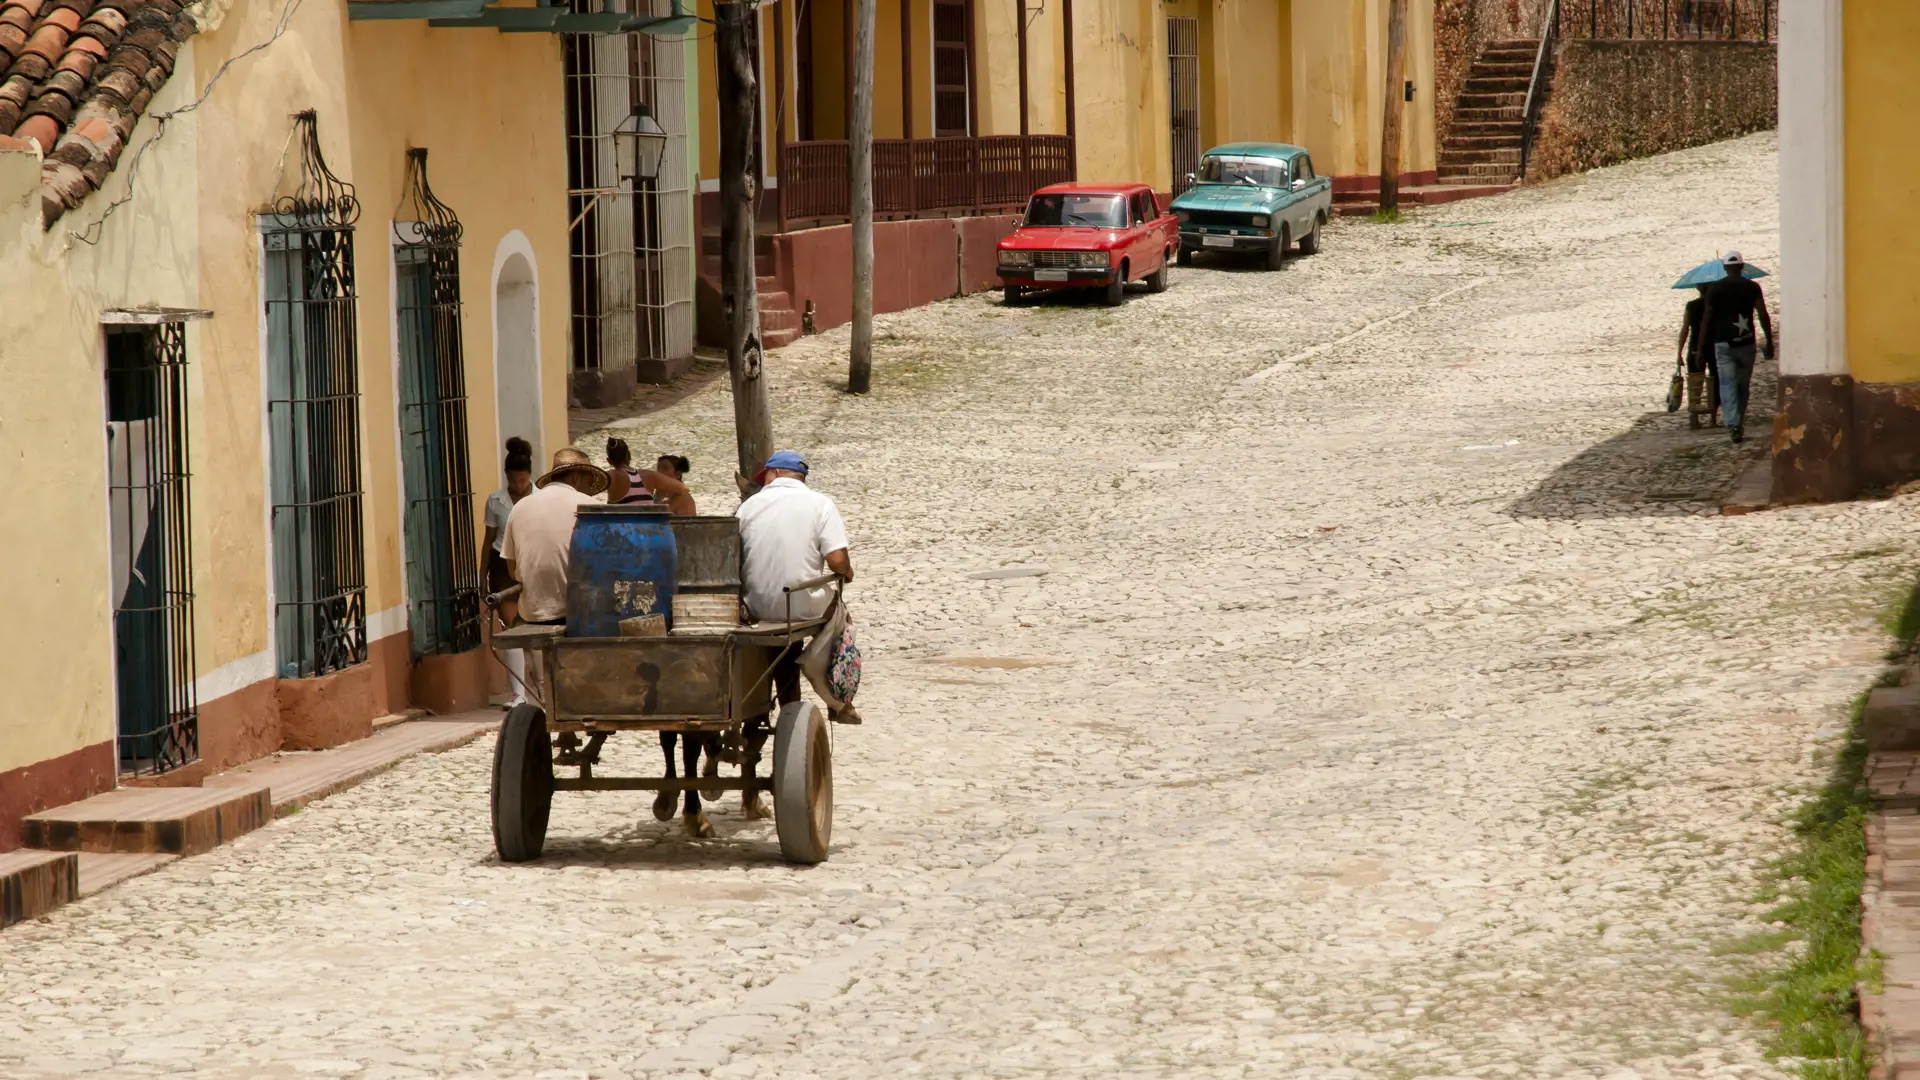 shutterstock_330338762 Cobble Street - Trinidad - Cuba.jpg